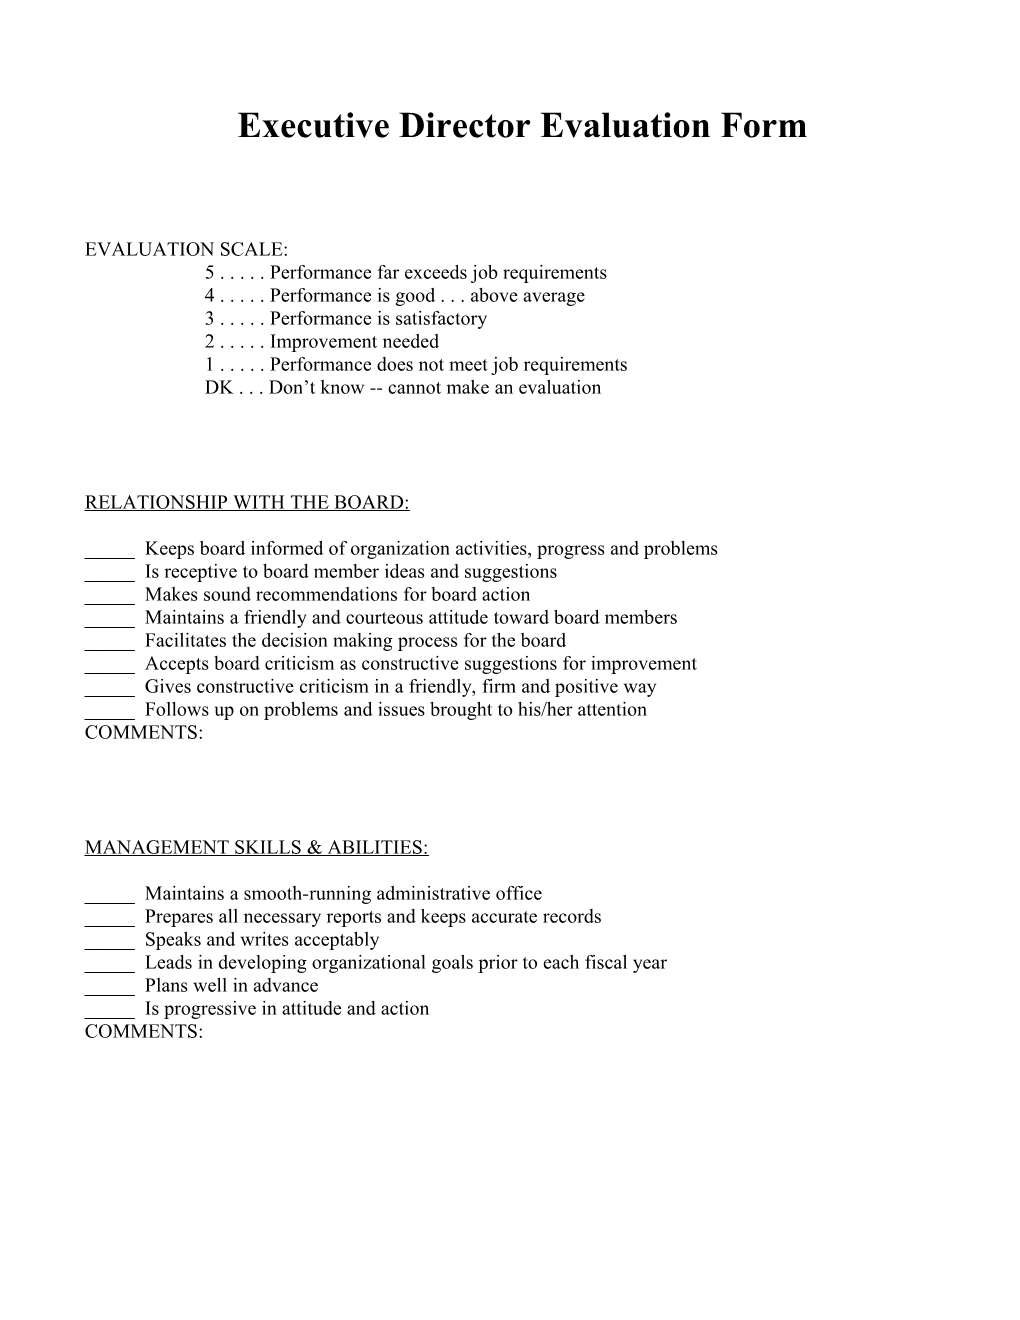 GSAE Executive Director Evaluation Form